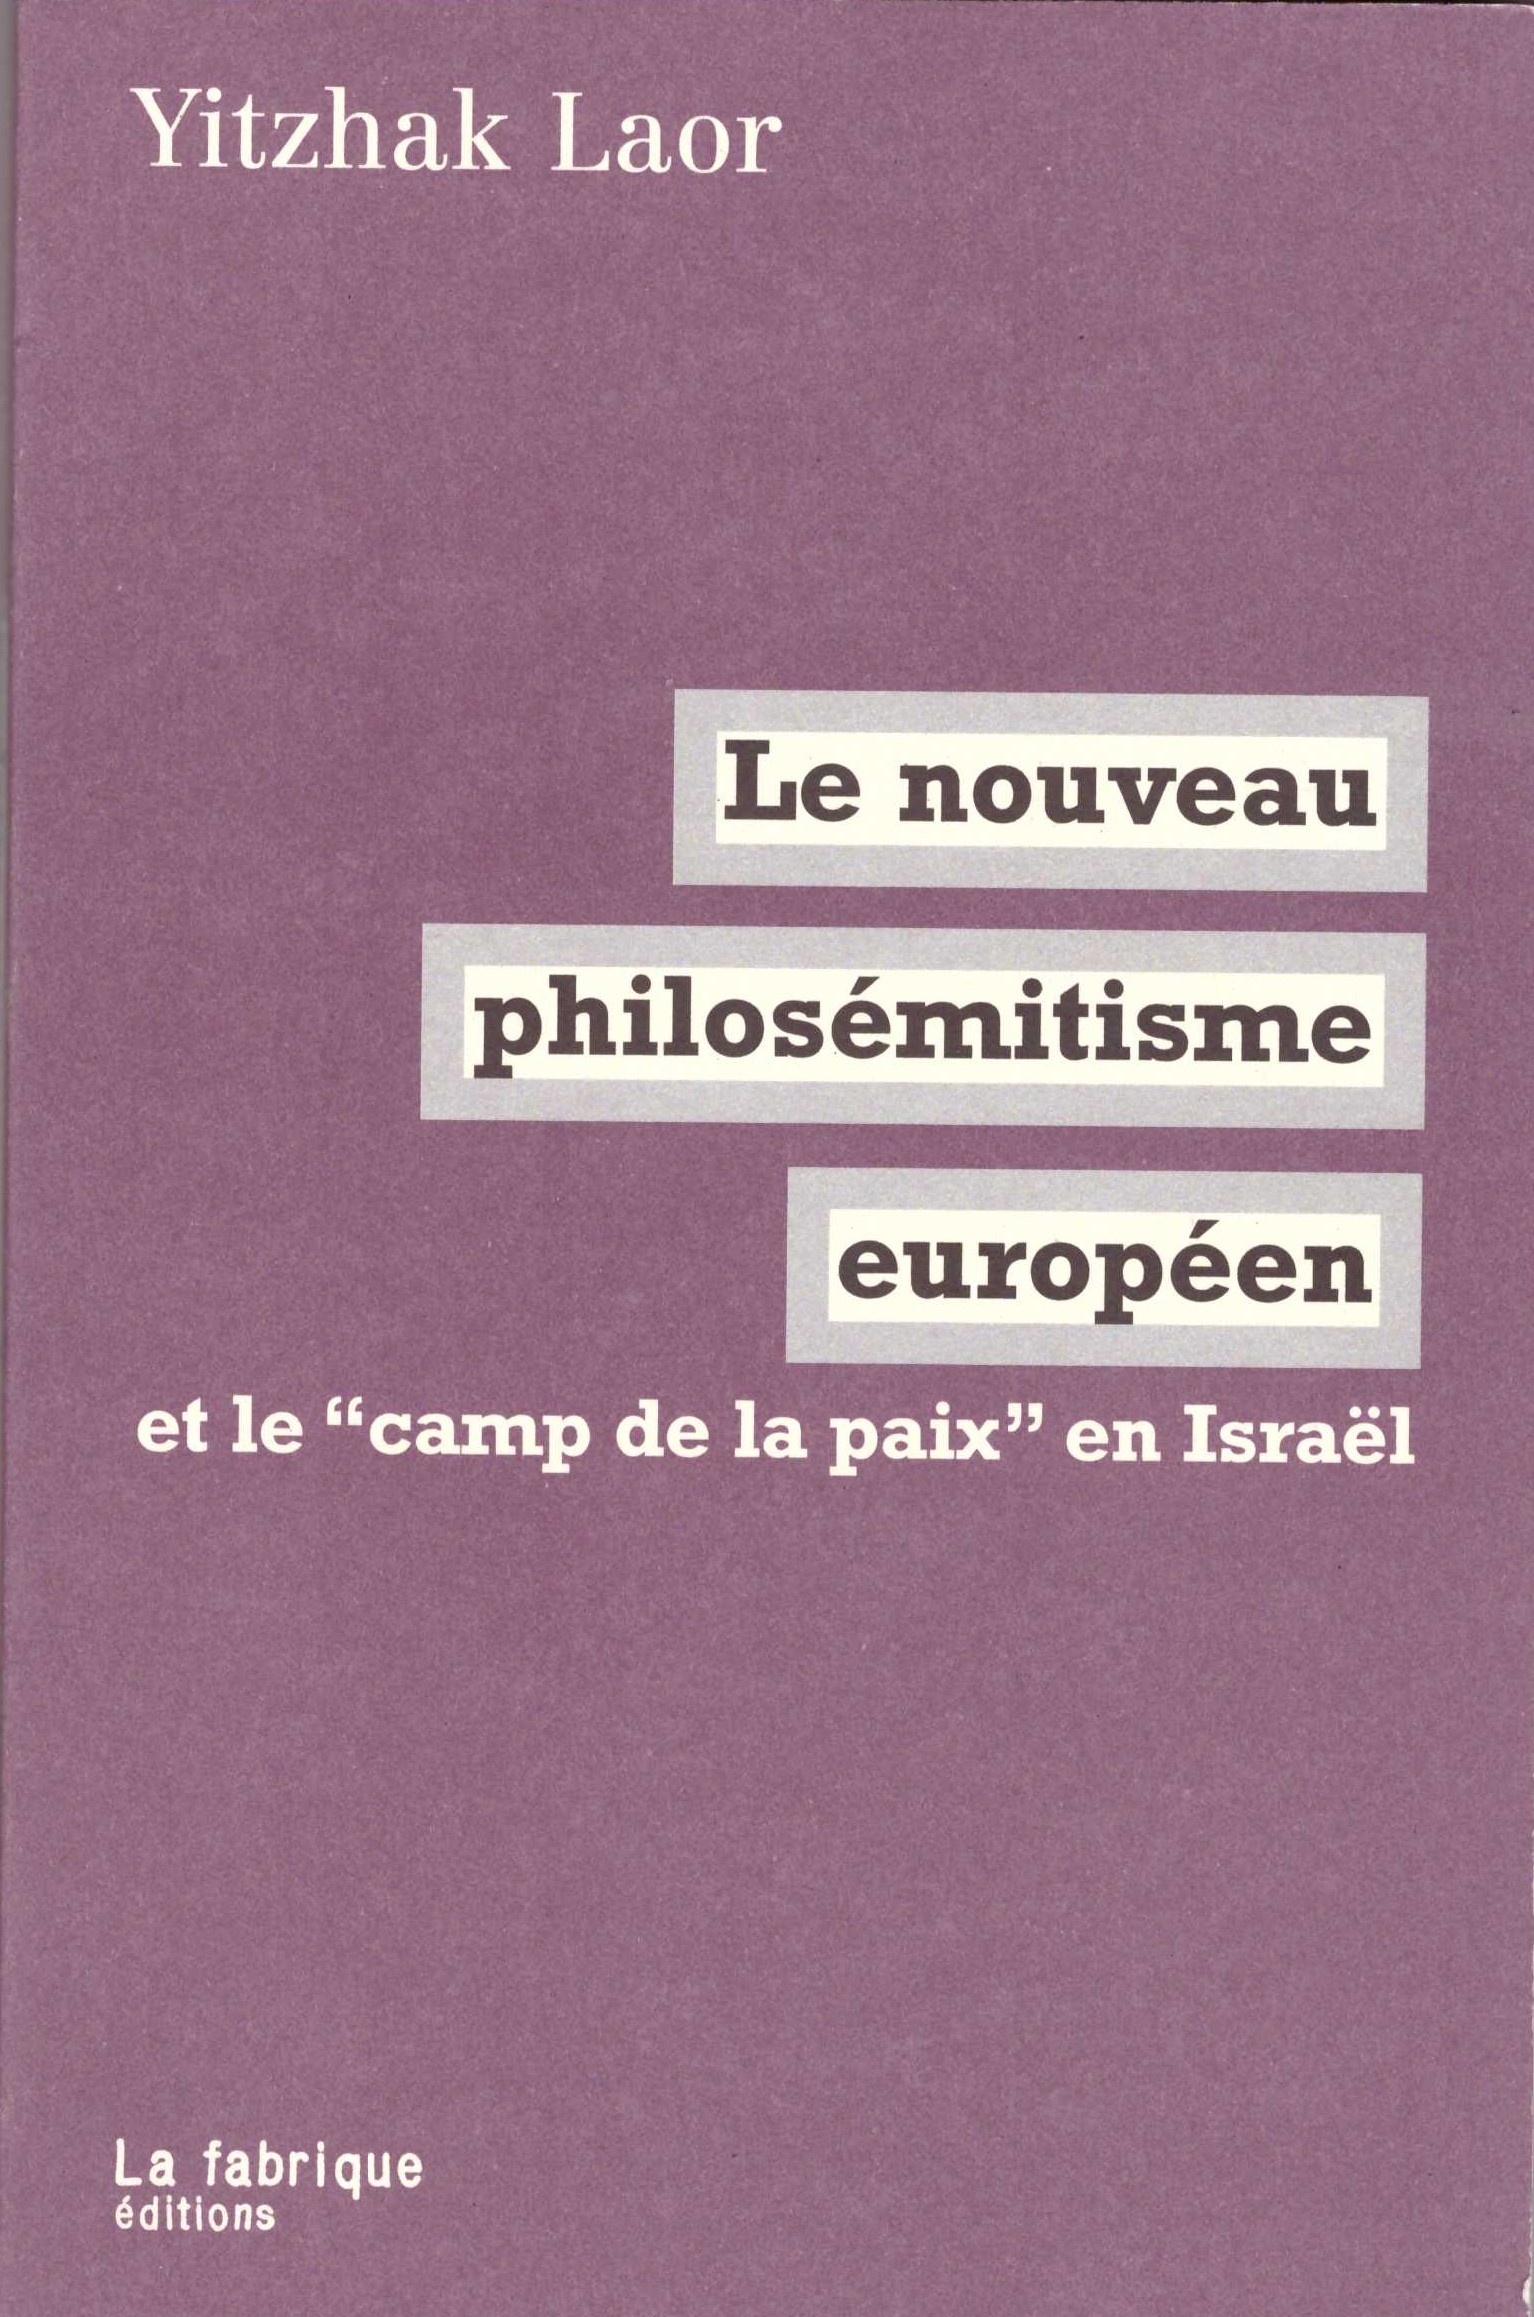 Le nouveau philosémitisme européen et le "camp de la paix" en Israël